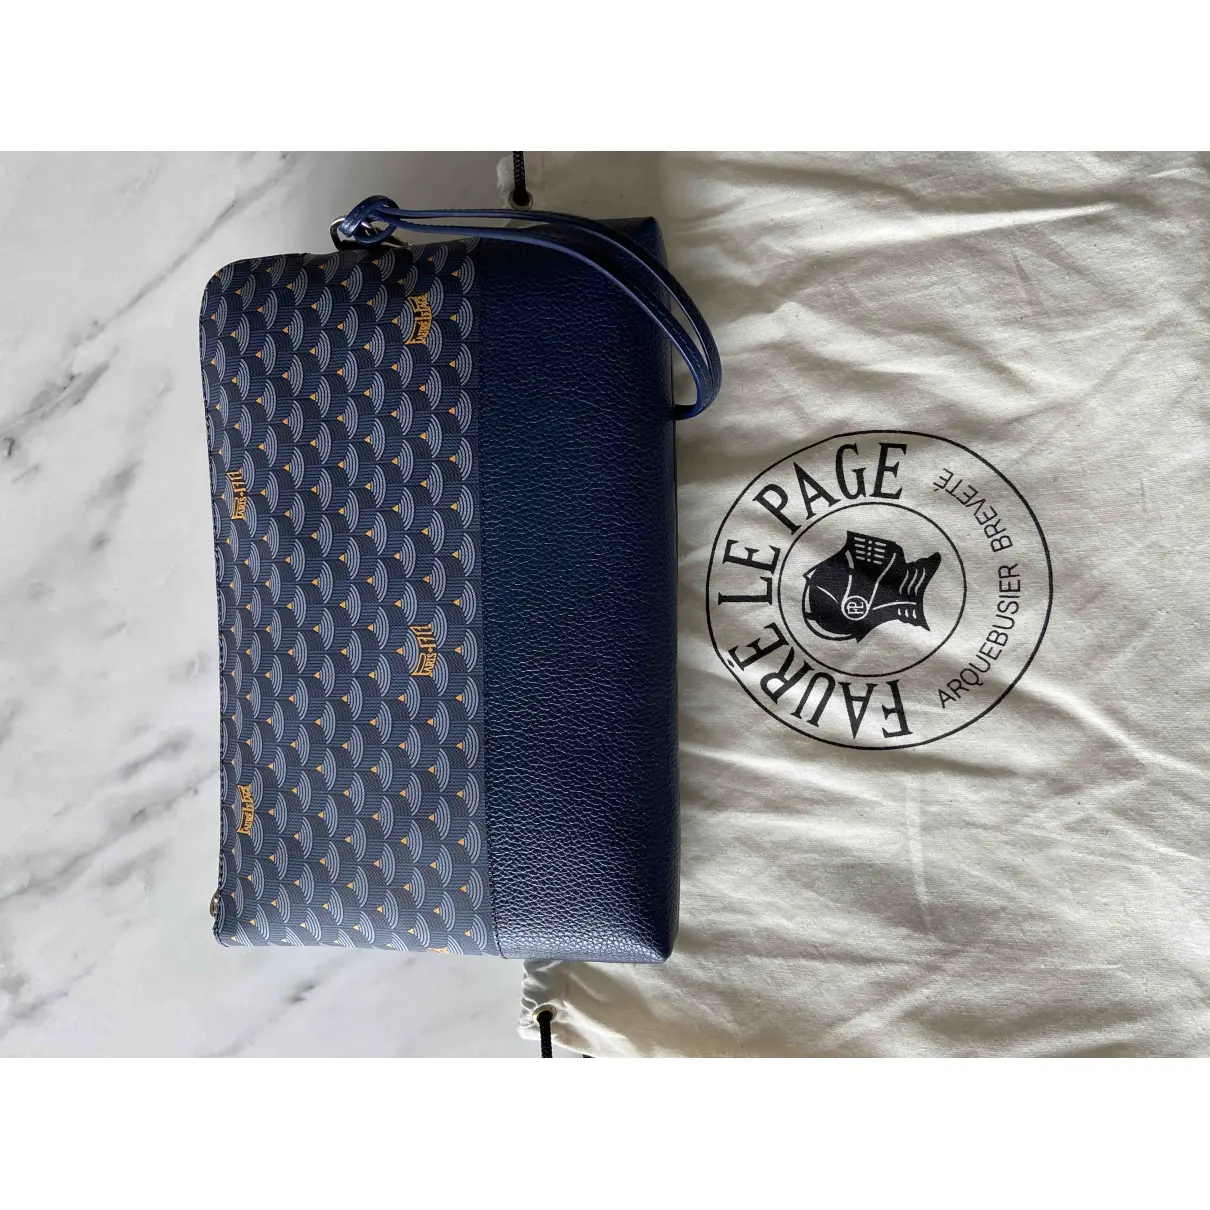 Buy Fauré Le Page Cloth clutch bag online